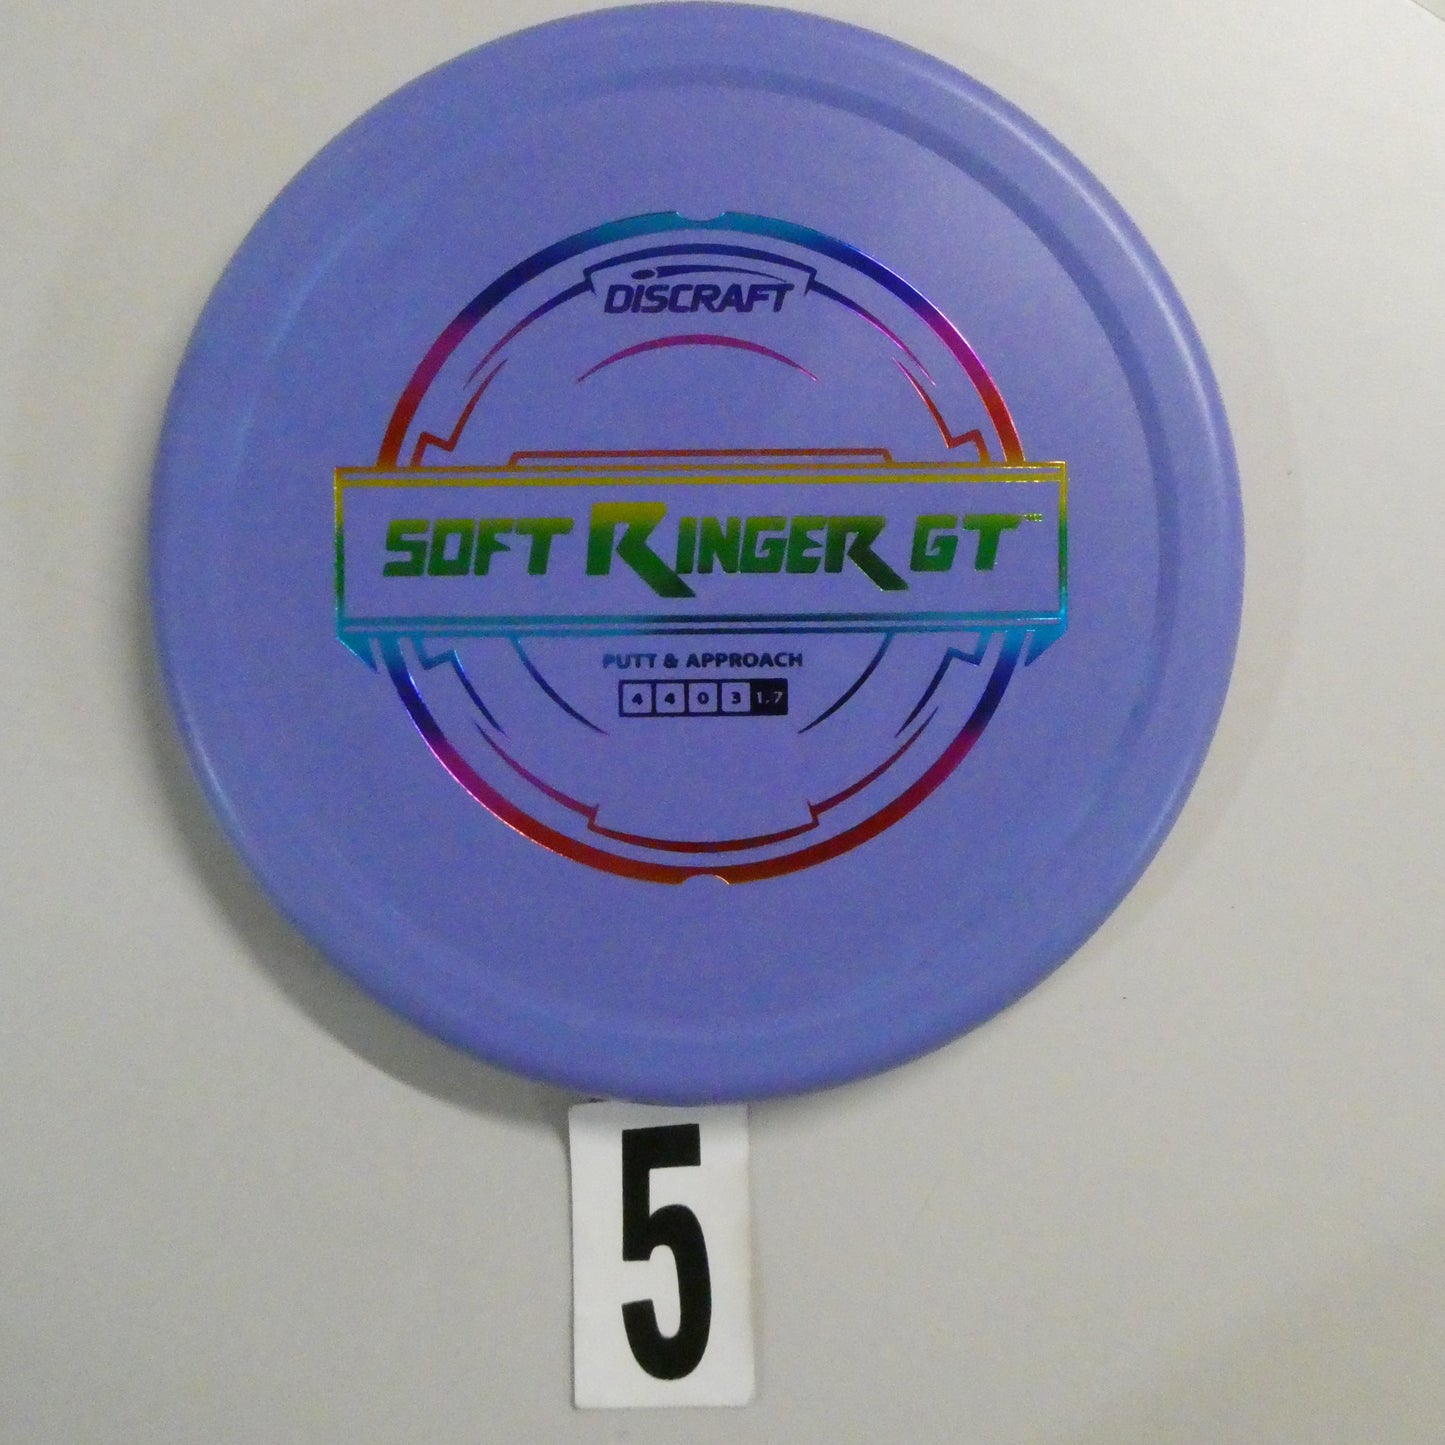 Putter Line Soft Ringer GT